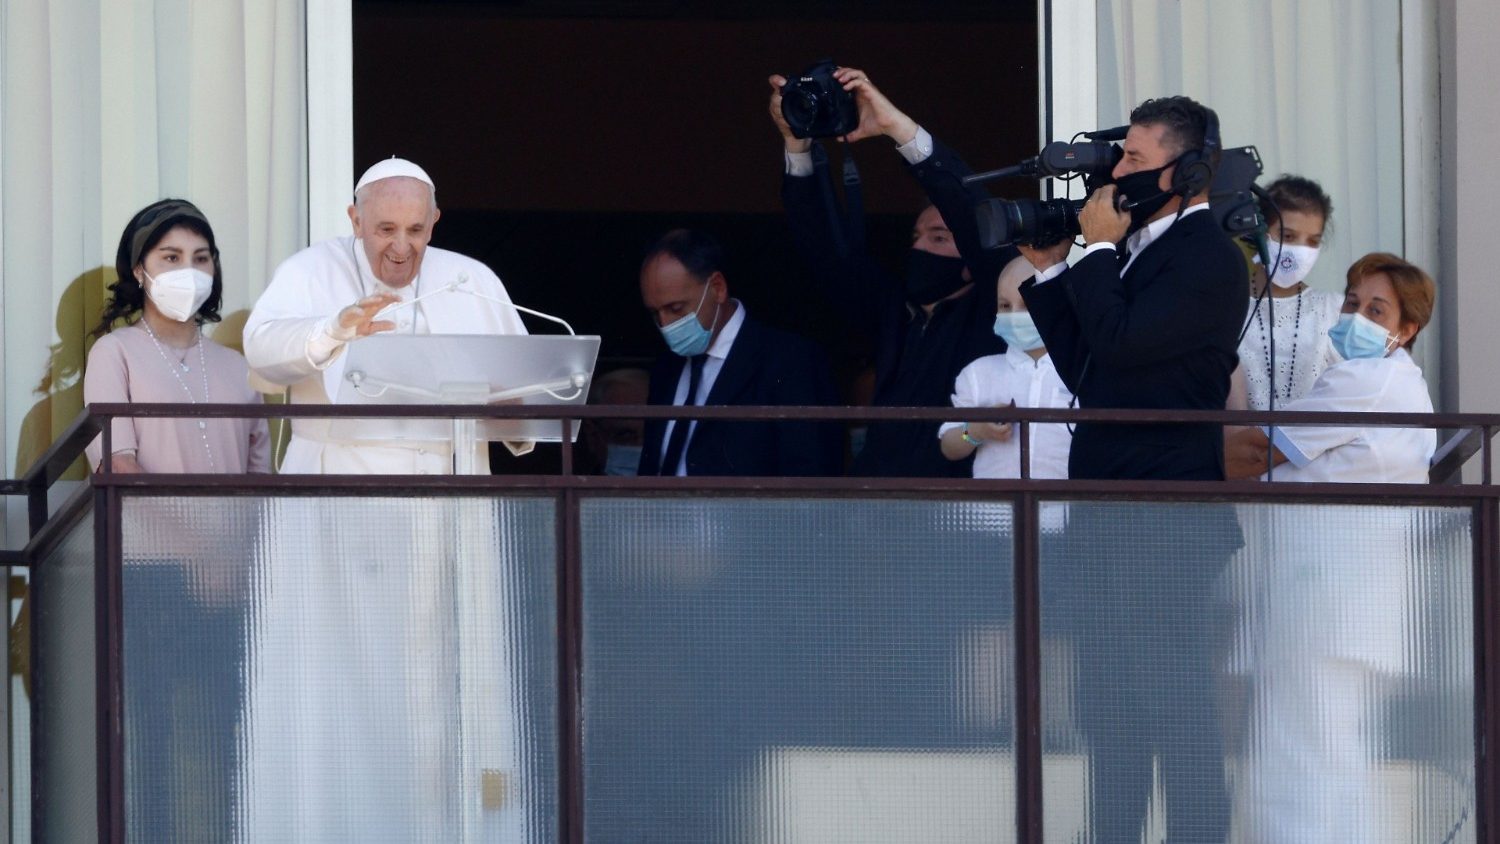 Папа Франциск назначил личного помощника по медицинским вопросам